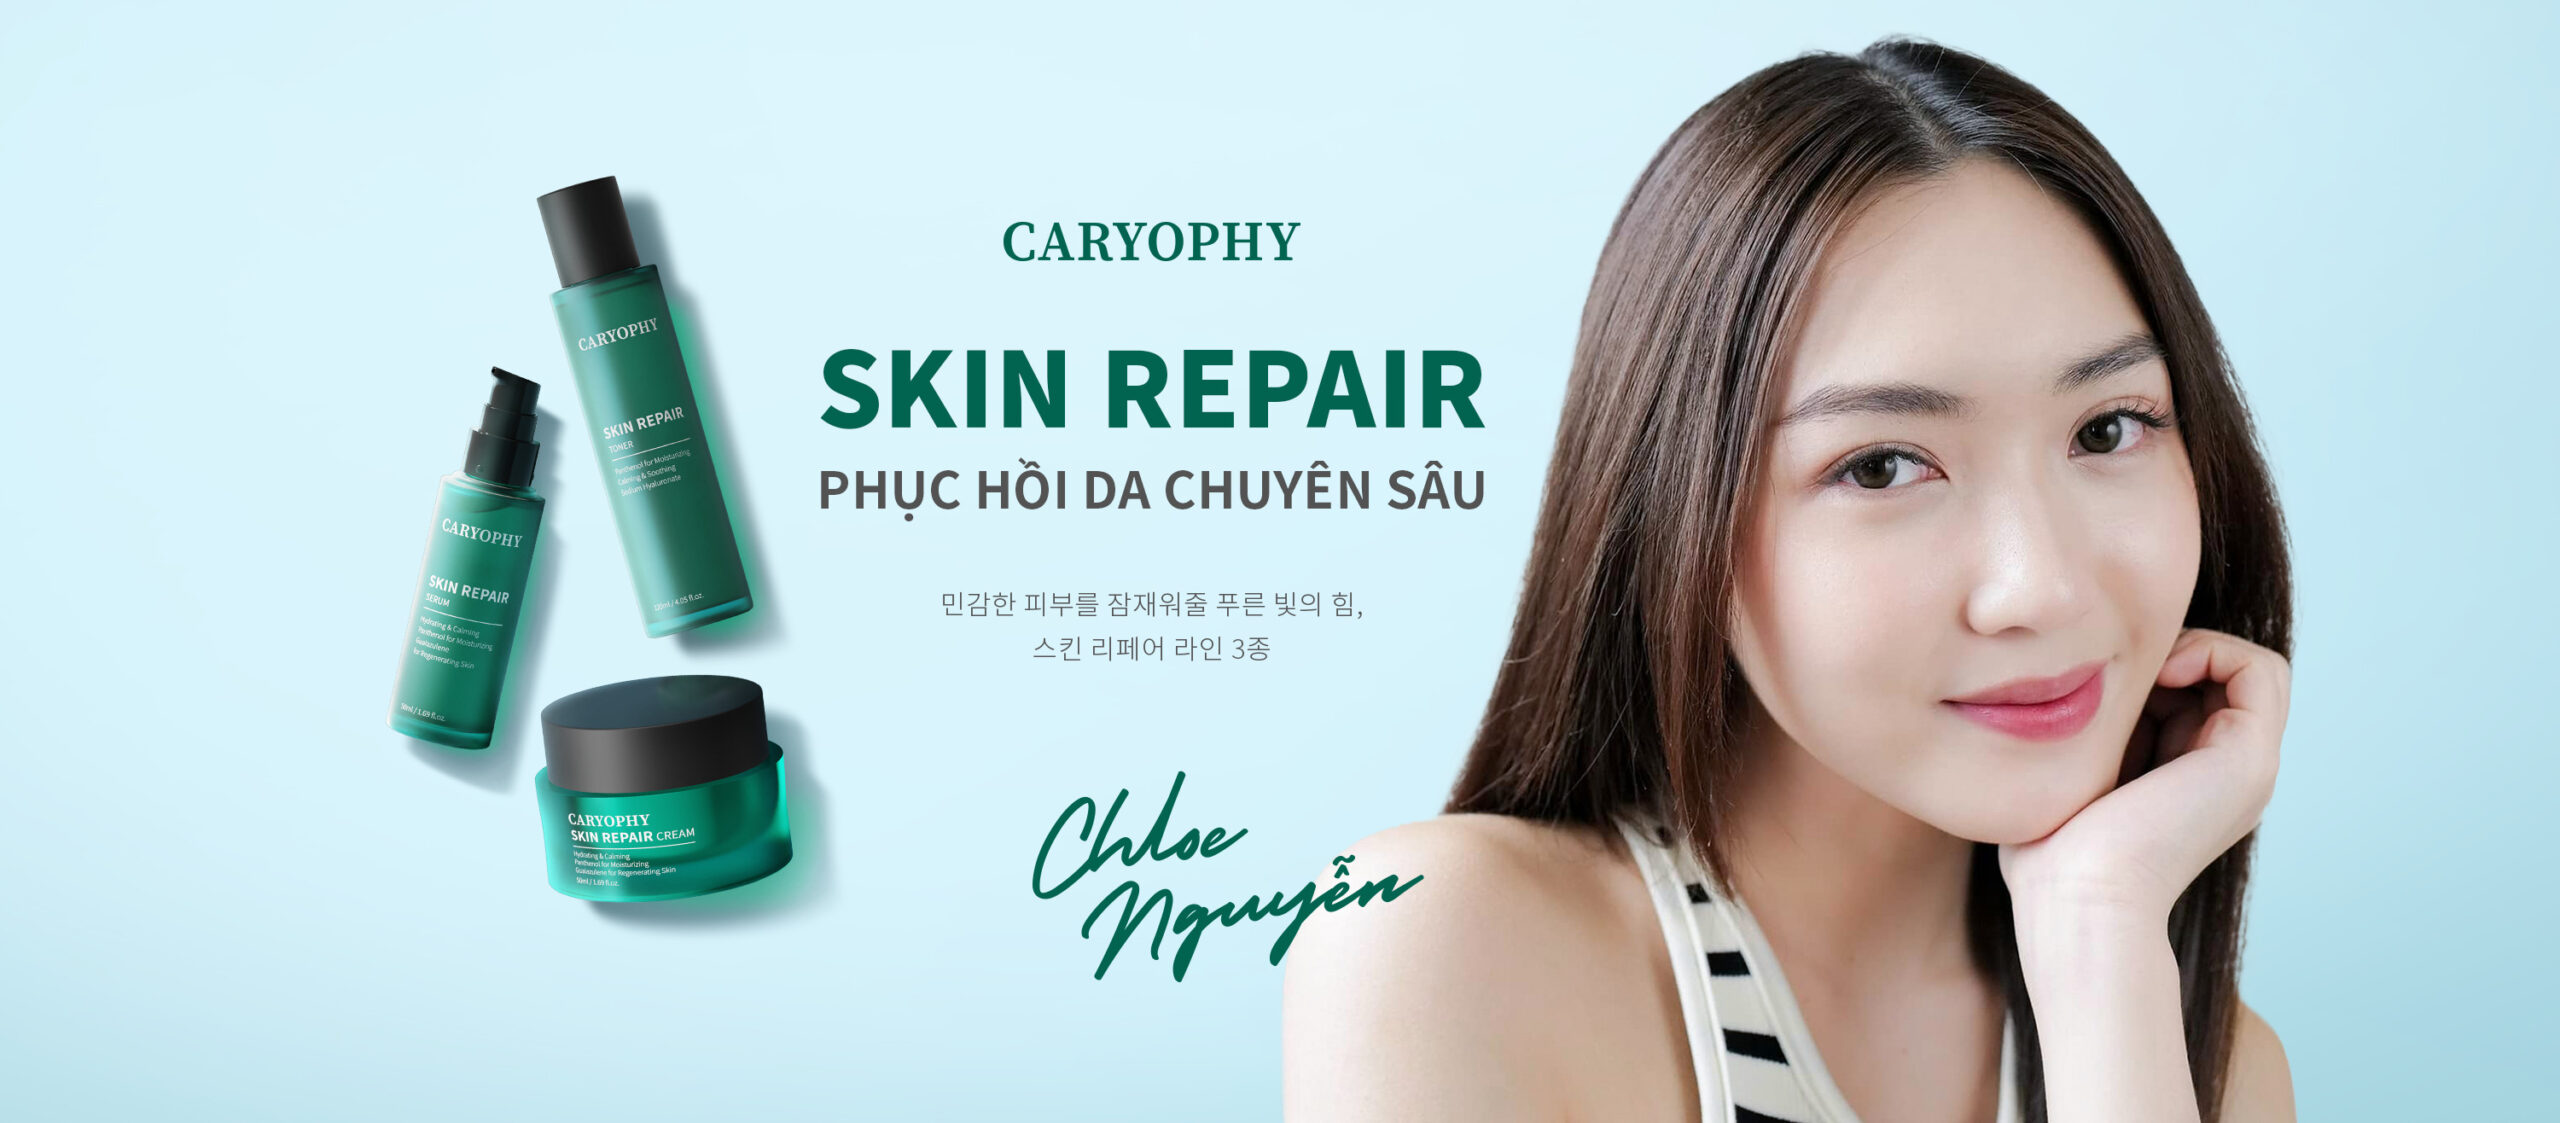 caryophy-skin-repair